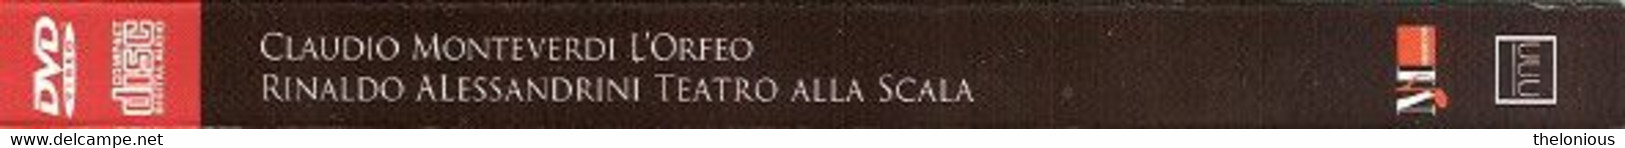 # Claudio Monteverdi - L'Orfeo - Teatro Alla Scala (DVD + CD) - Concert & Music